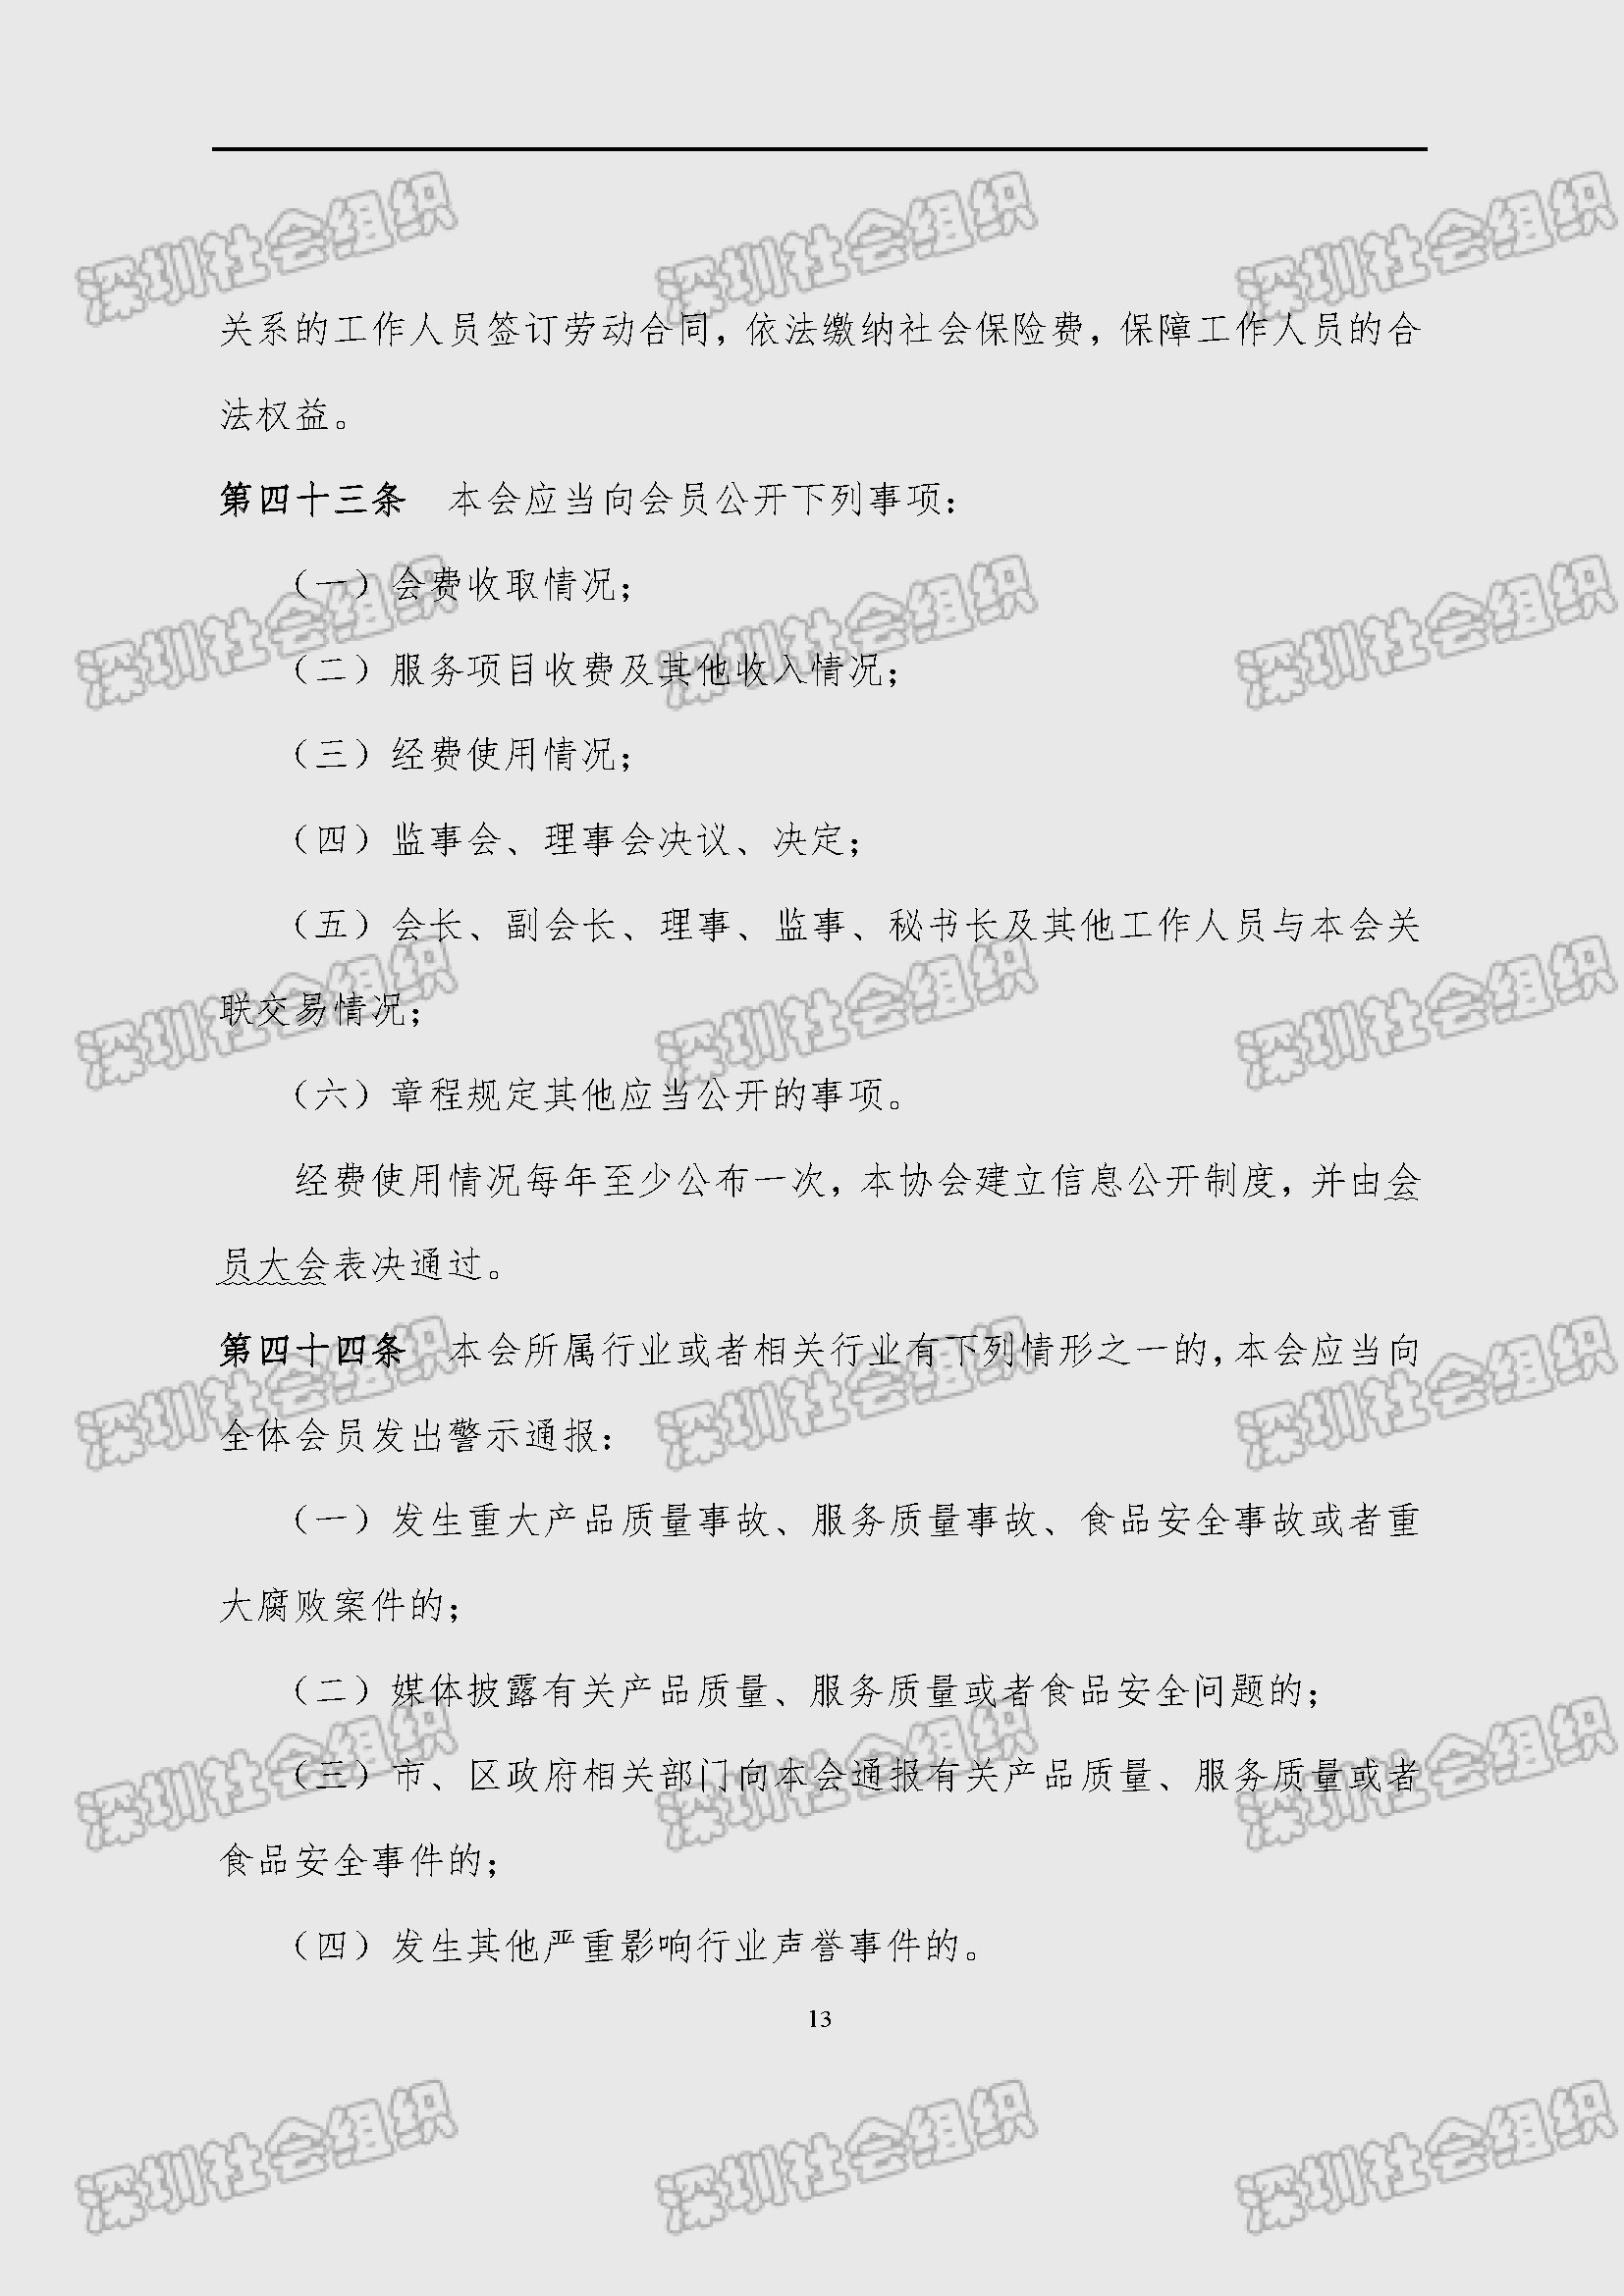 深圳市新材料行业协会章程_页面_13.jpg